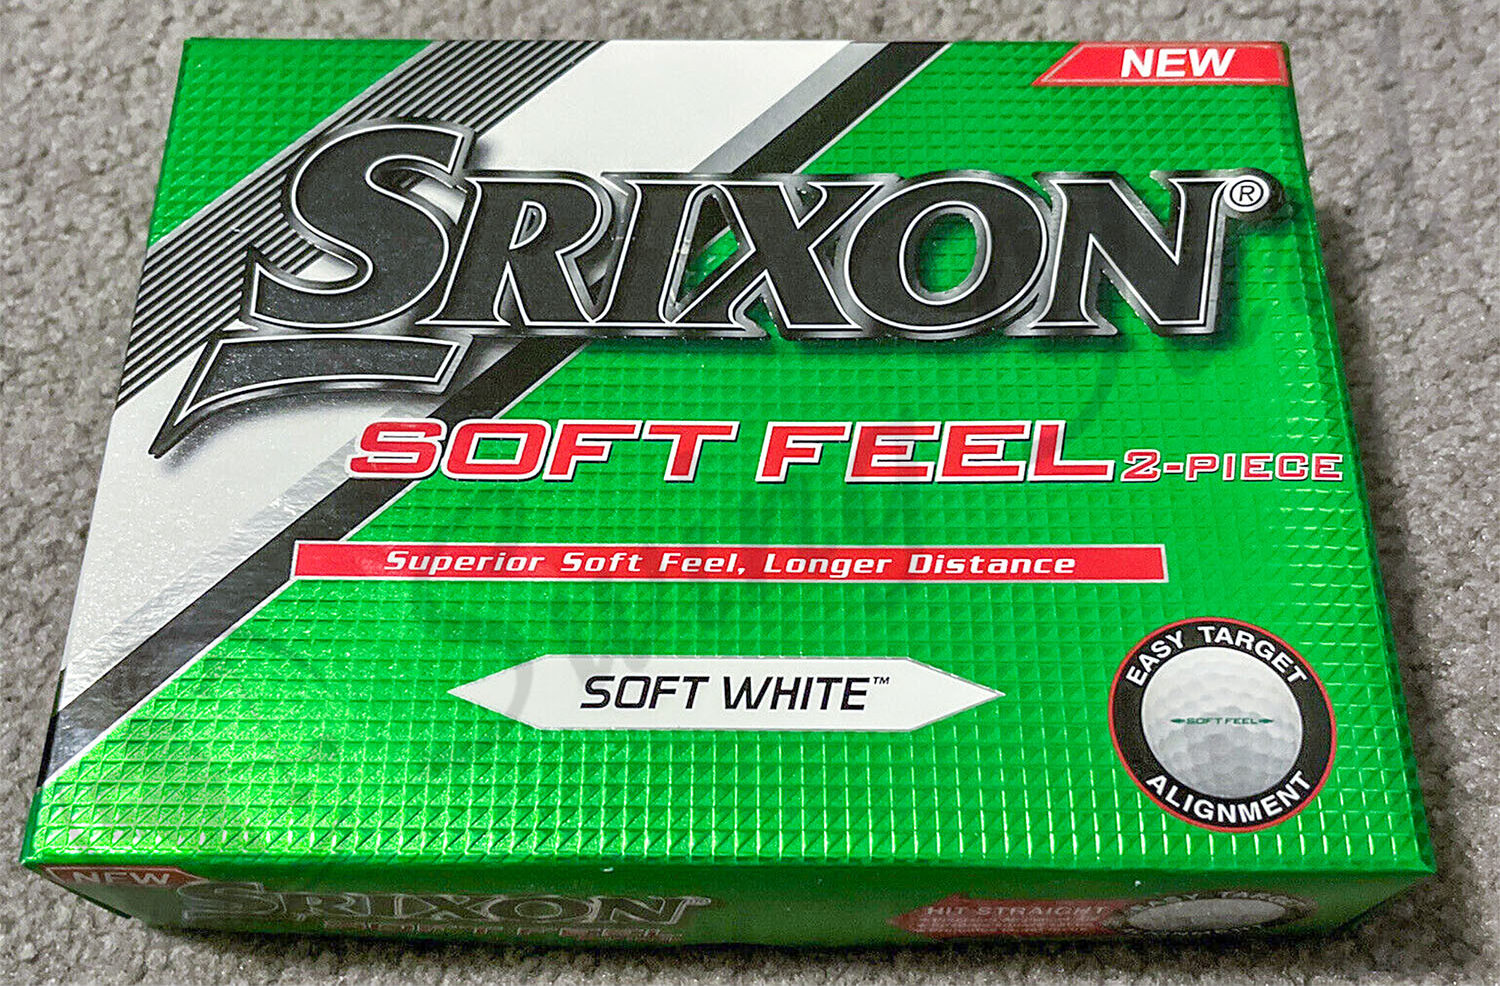 My new Srixon Soft Feel for testing